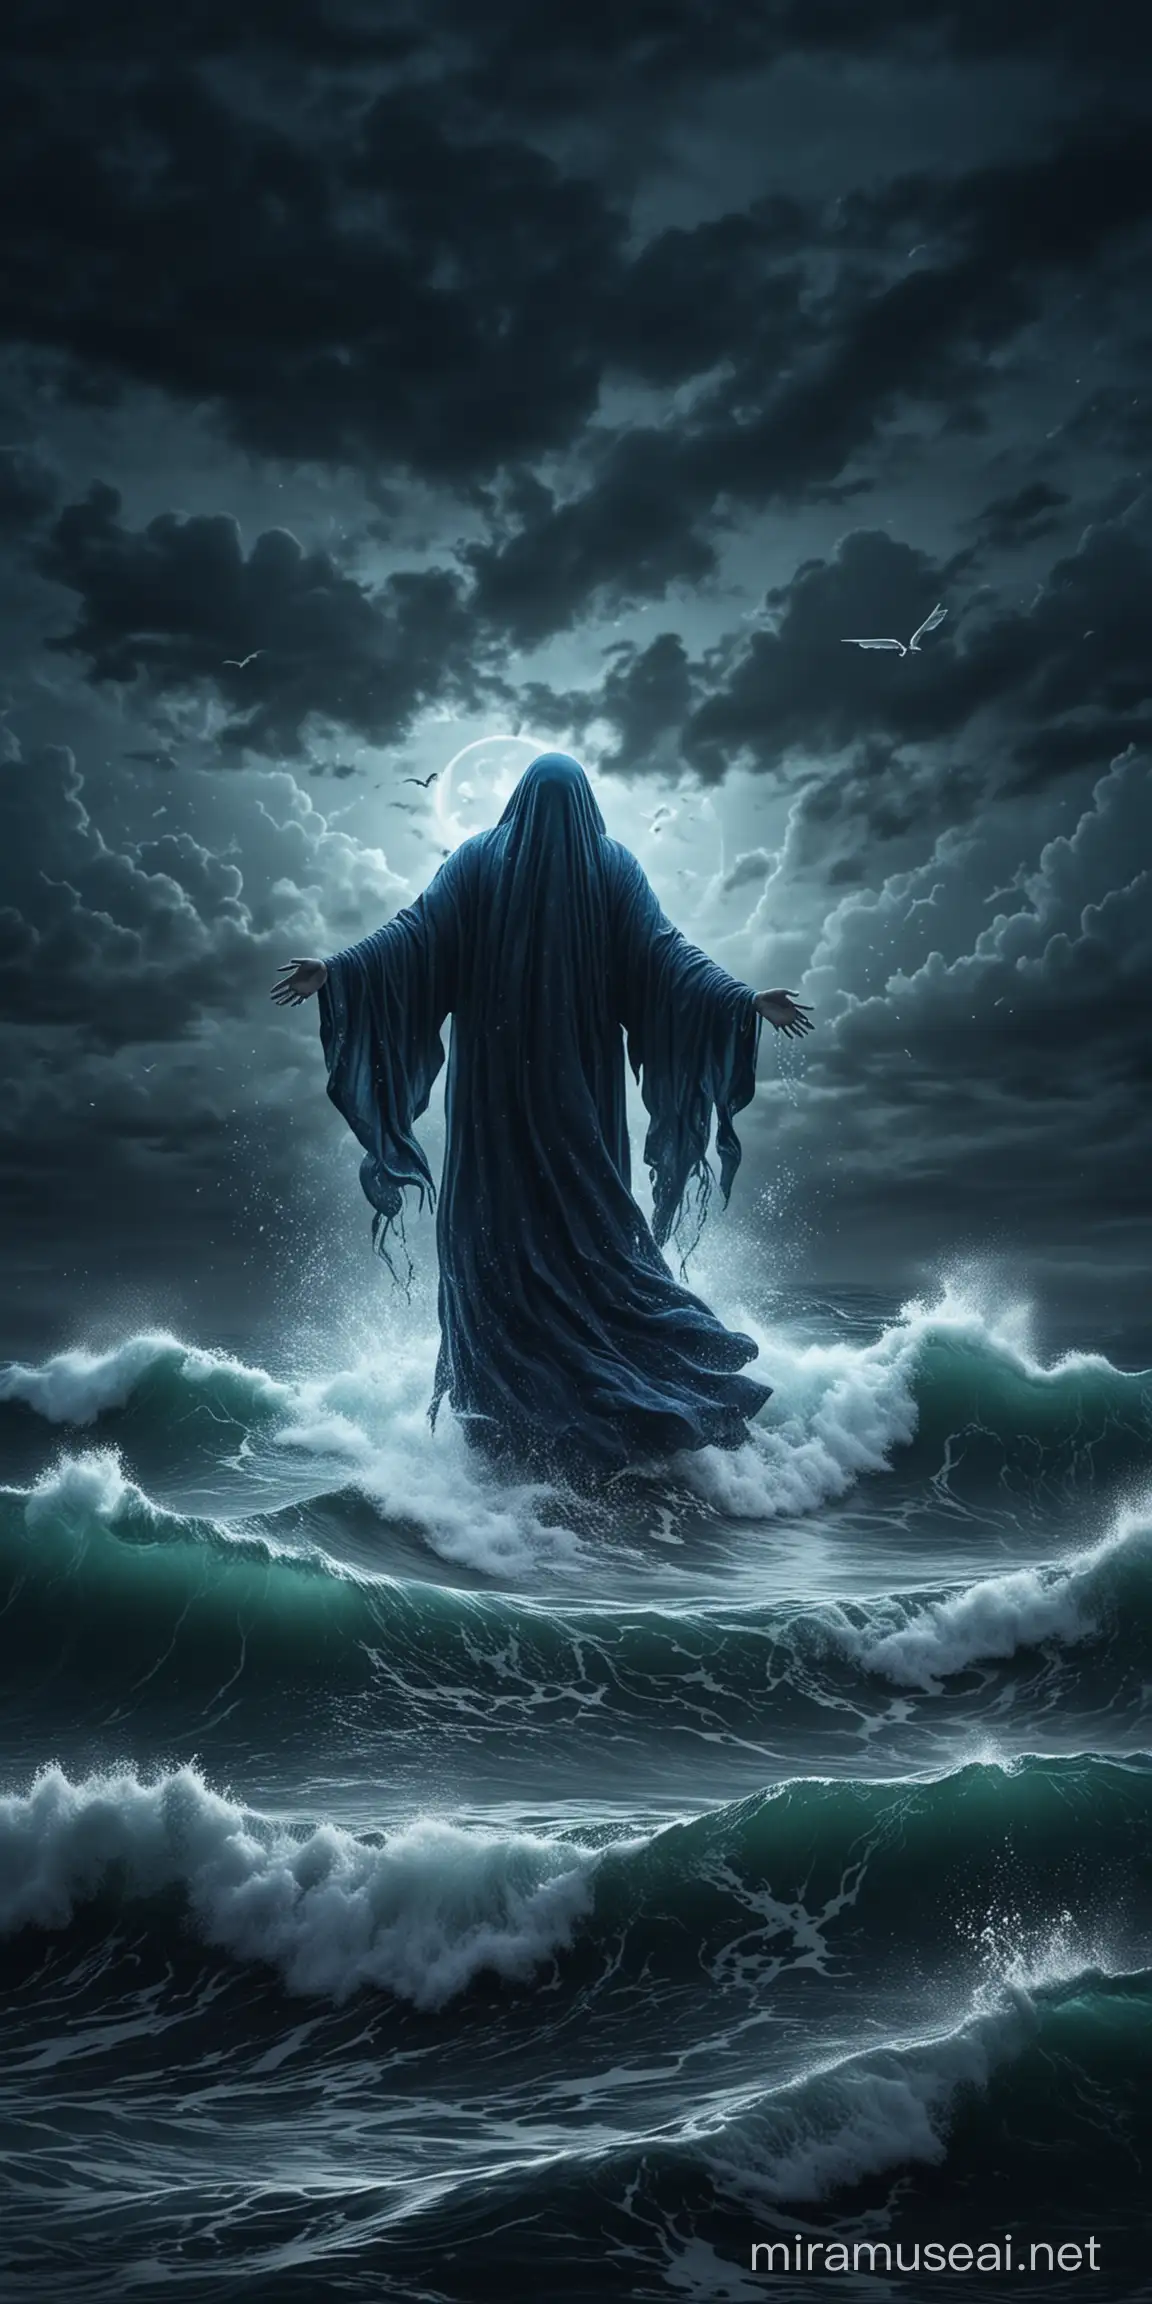 Містичний привид летить над темним синім штормовим морем в ночі